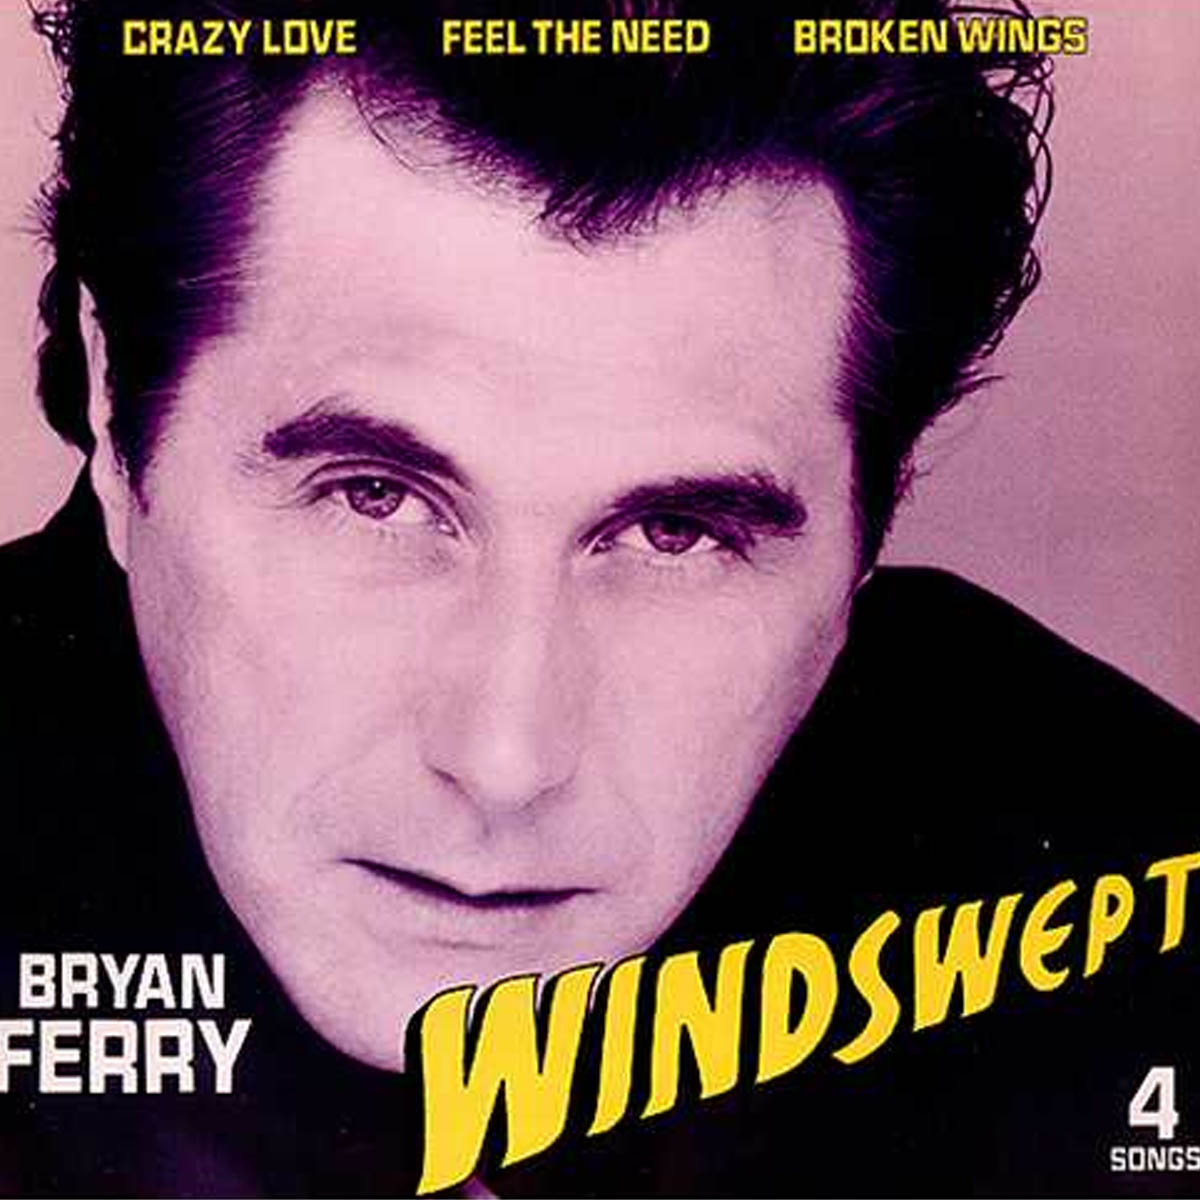 Bryan Ferry - Cortado pelo vento 